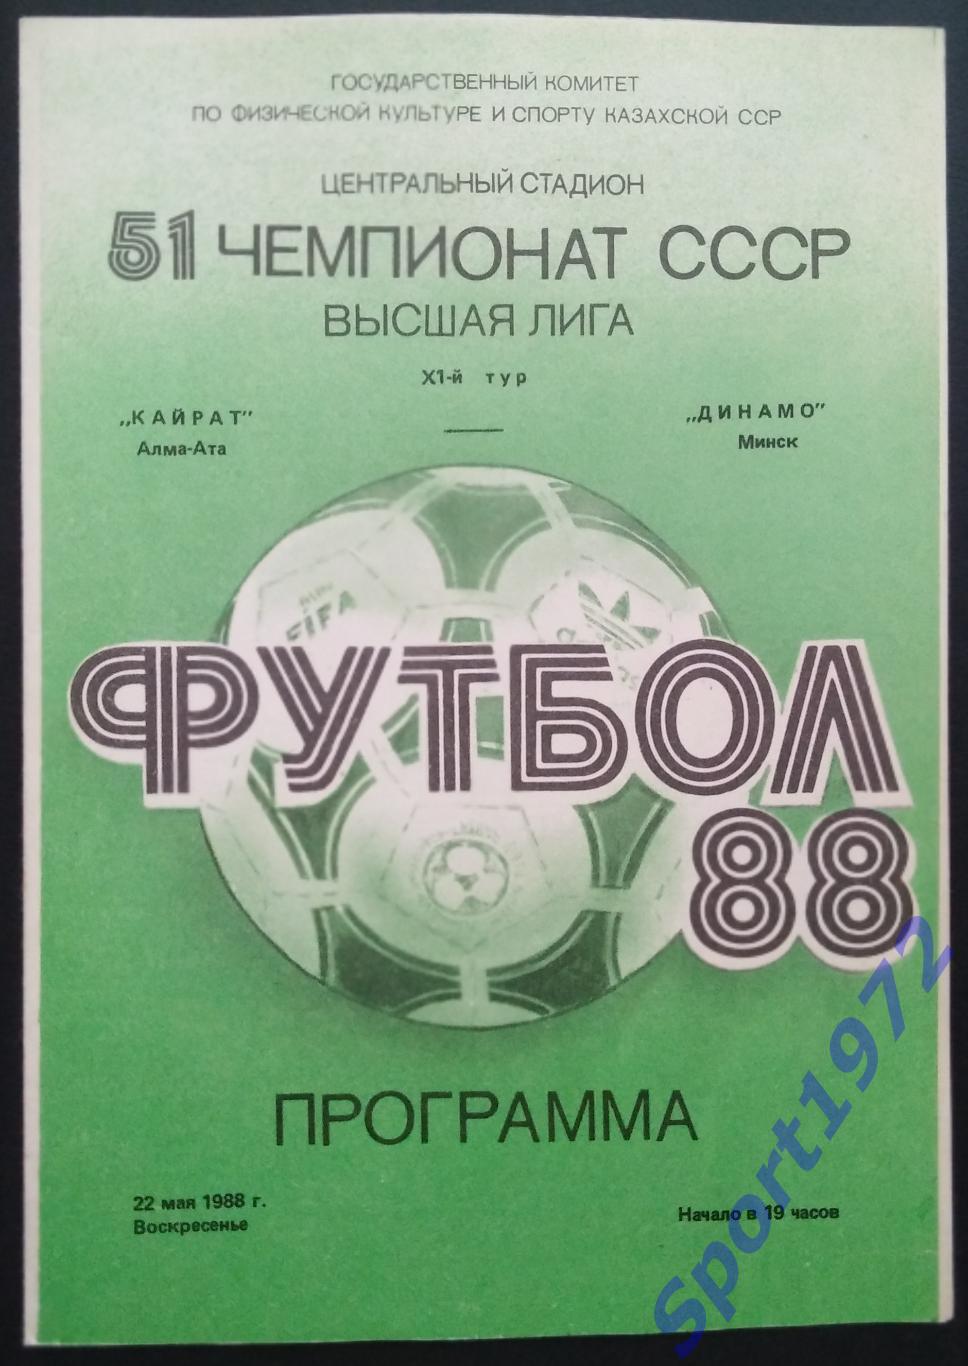 Кайрат Алма-Ата - Динамо Минск - 22.05.1988